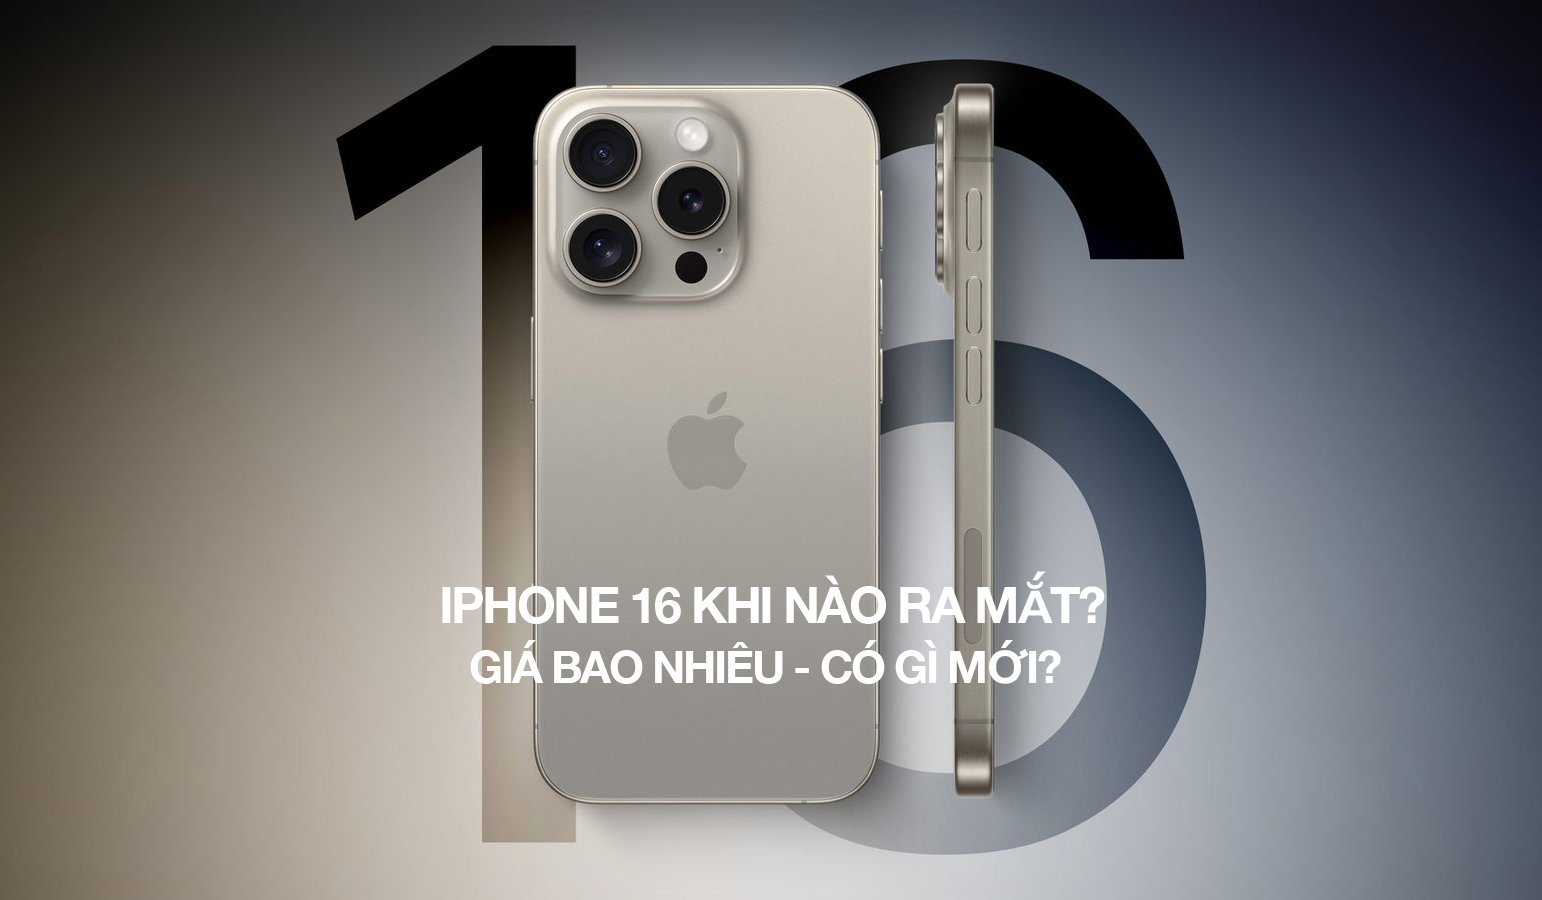 iPhone 16 khi nào ra mắt? Giá bao nhiêu và có gì mới?